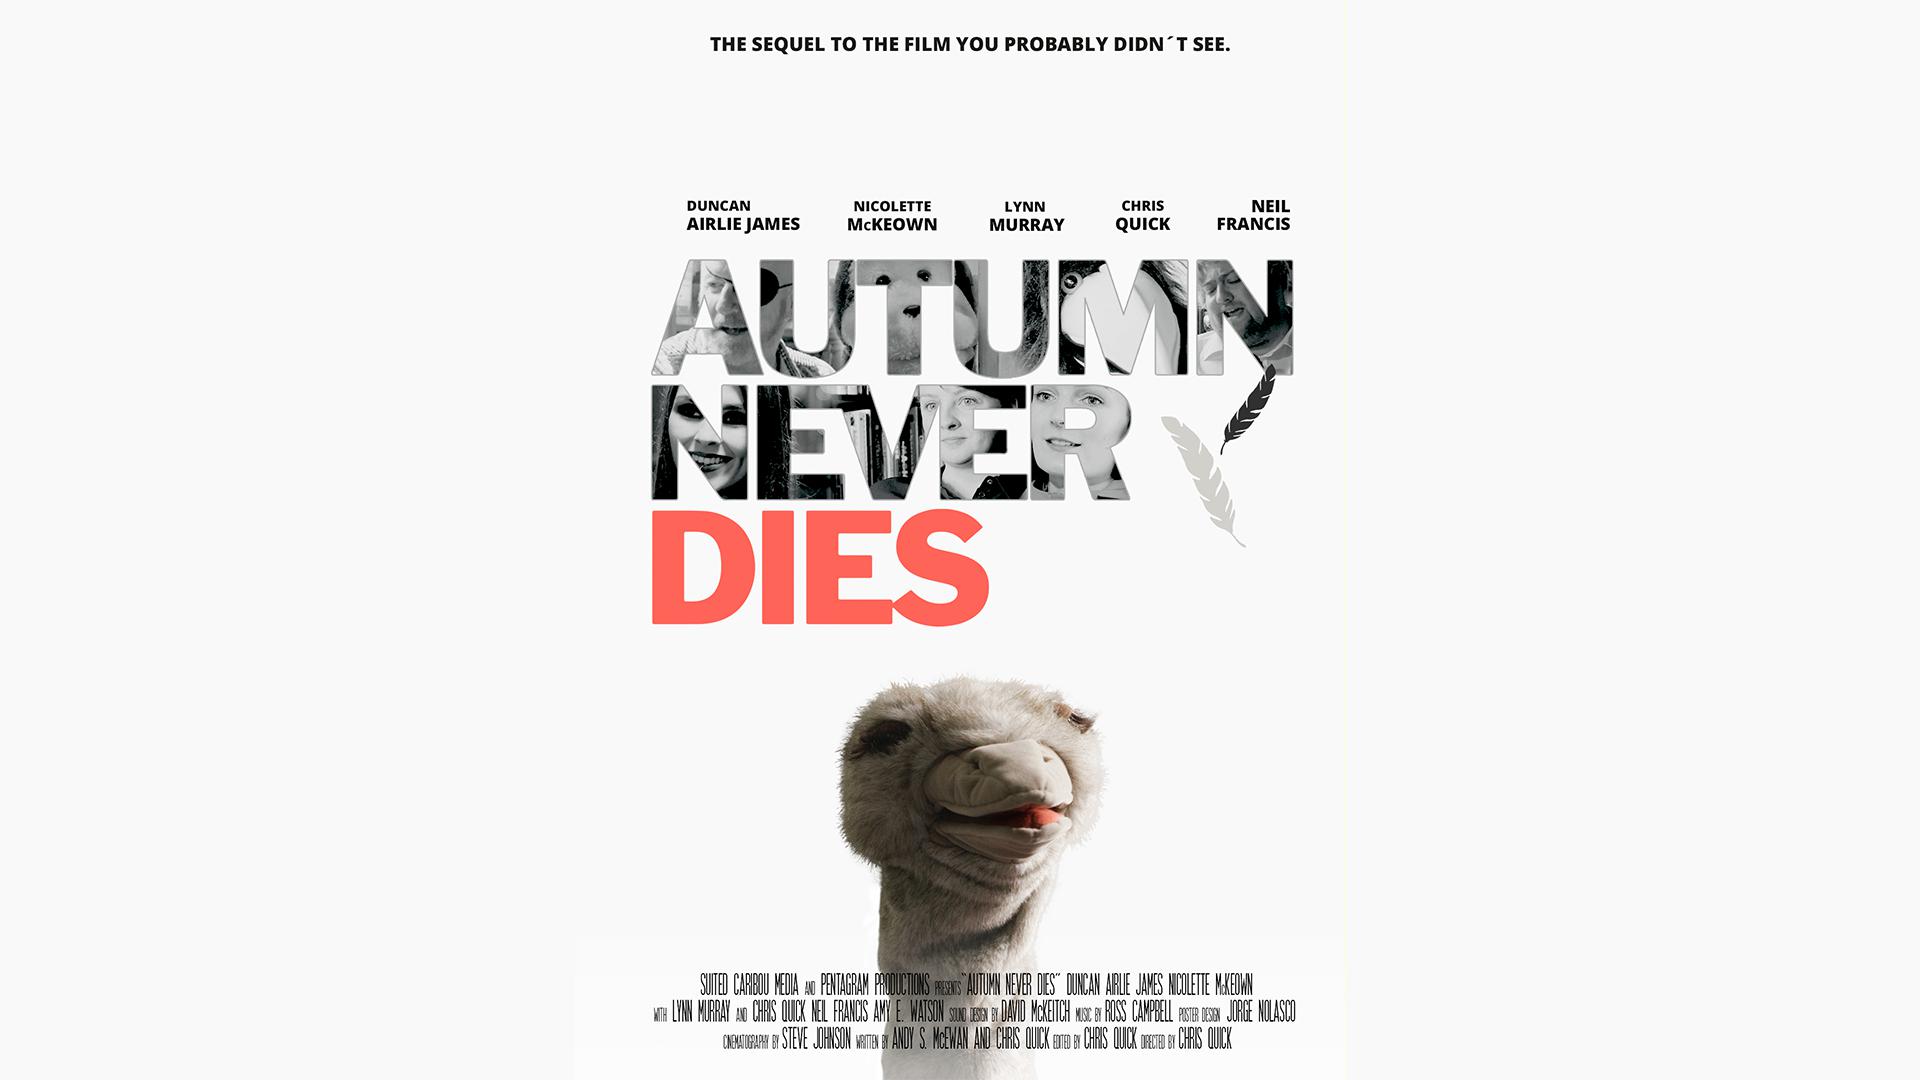 Autumn Never Dies